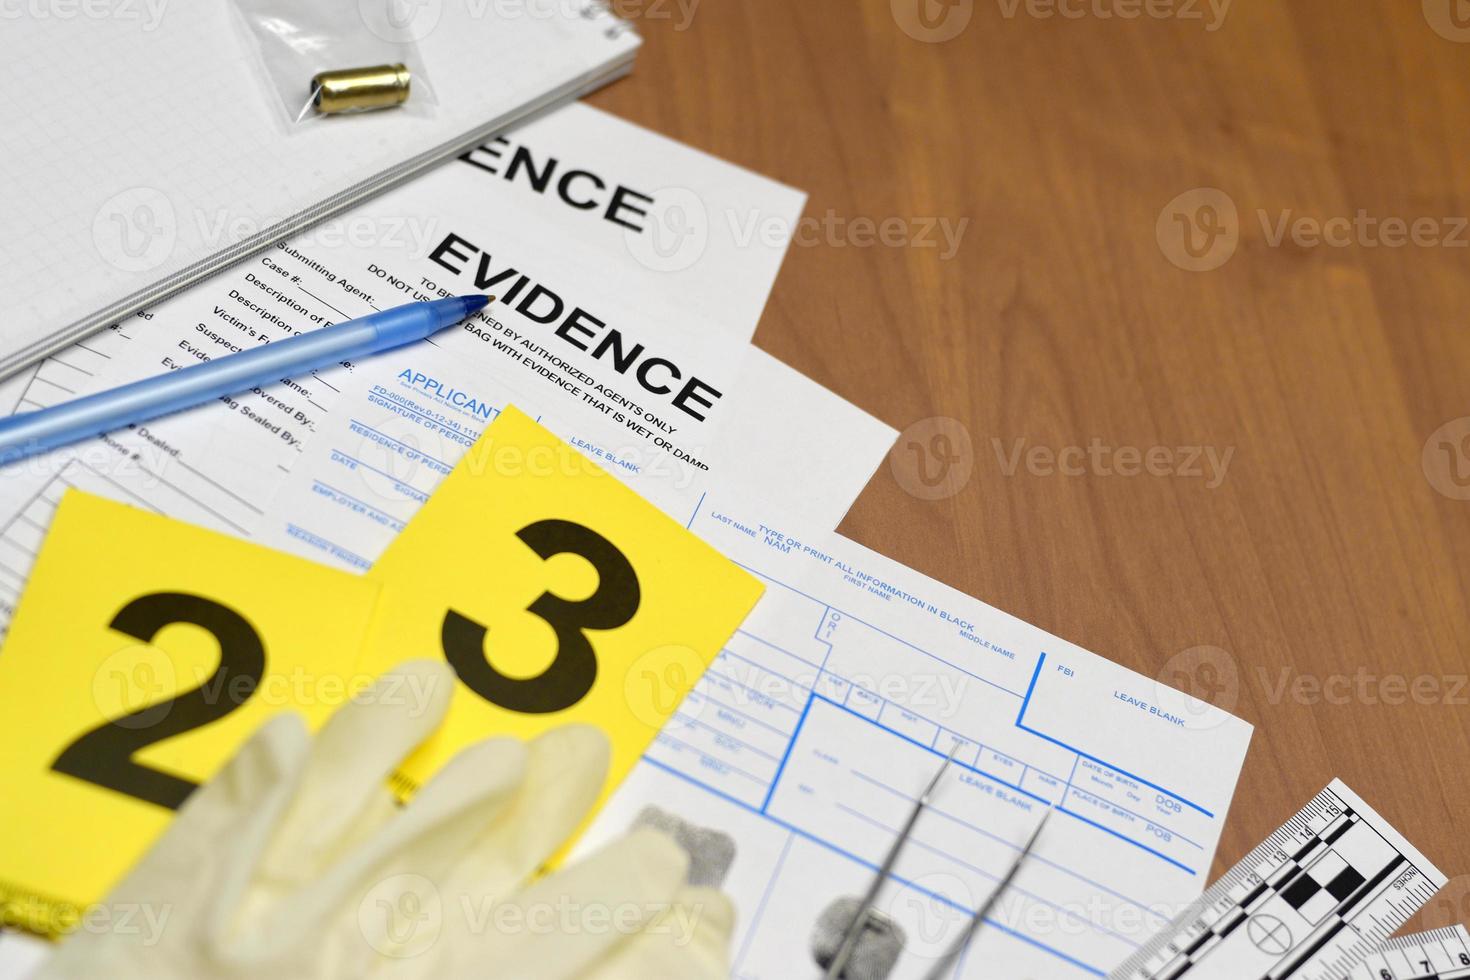 papeleo durante el proceso de investigación de la escena del crimen en el laboratorio csi. etiquetas de evidencia con el solicitante de huellas dactilares y guantes de goma en la mesa de vooden foto